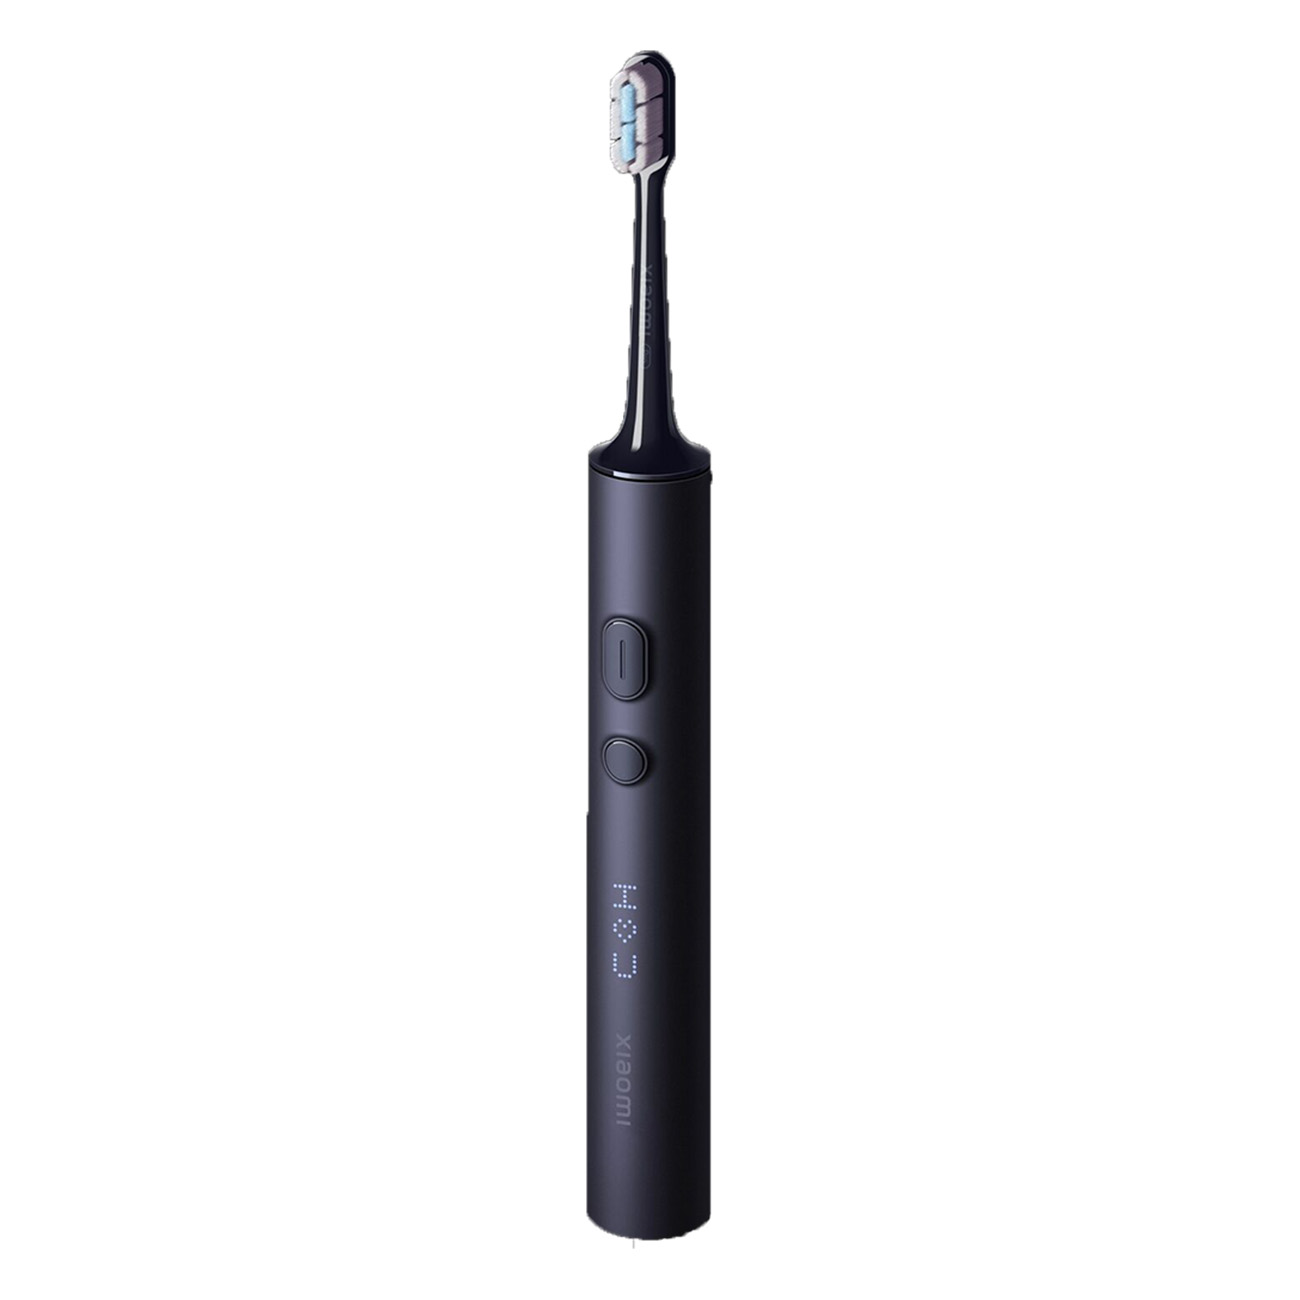 XIAOMI Electric Elektrische Zahnbürste schwarz T700 Toothbrush